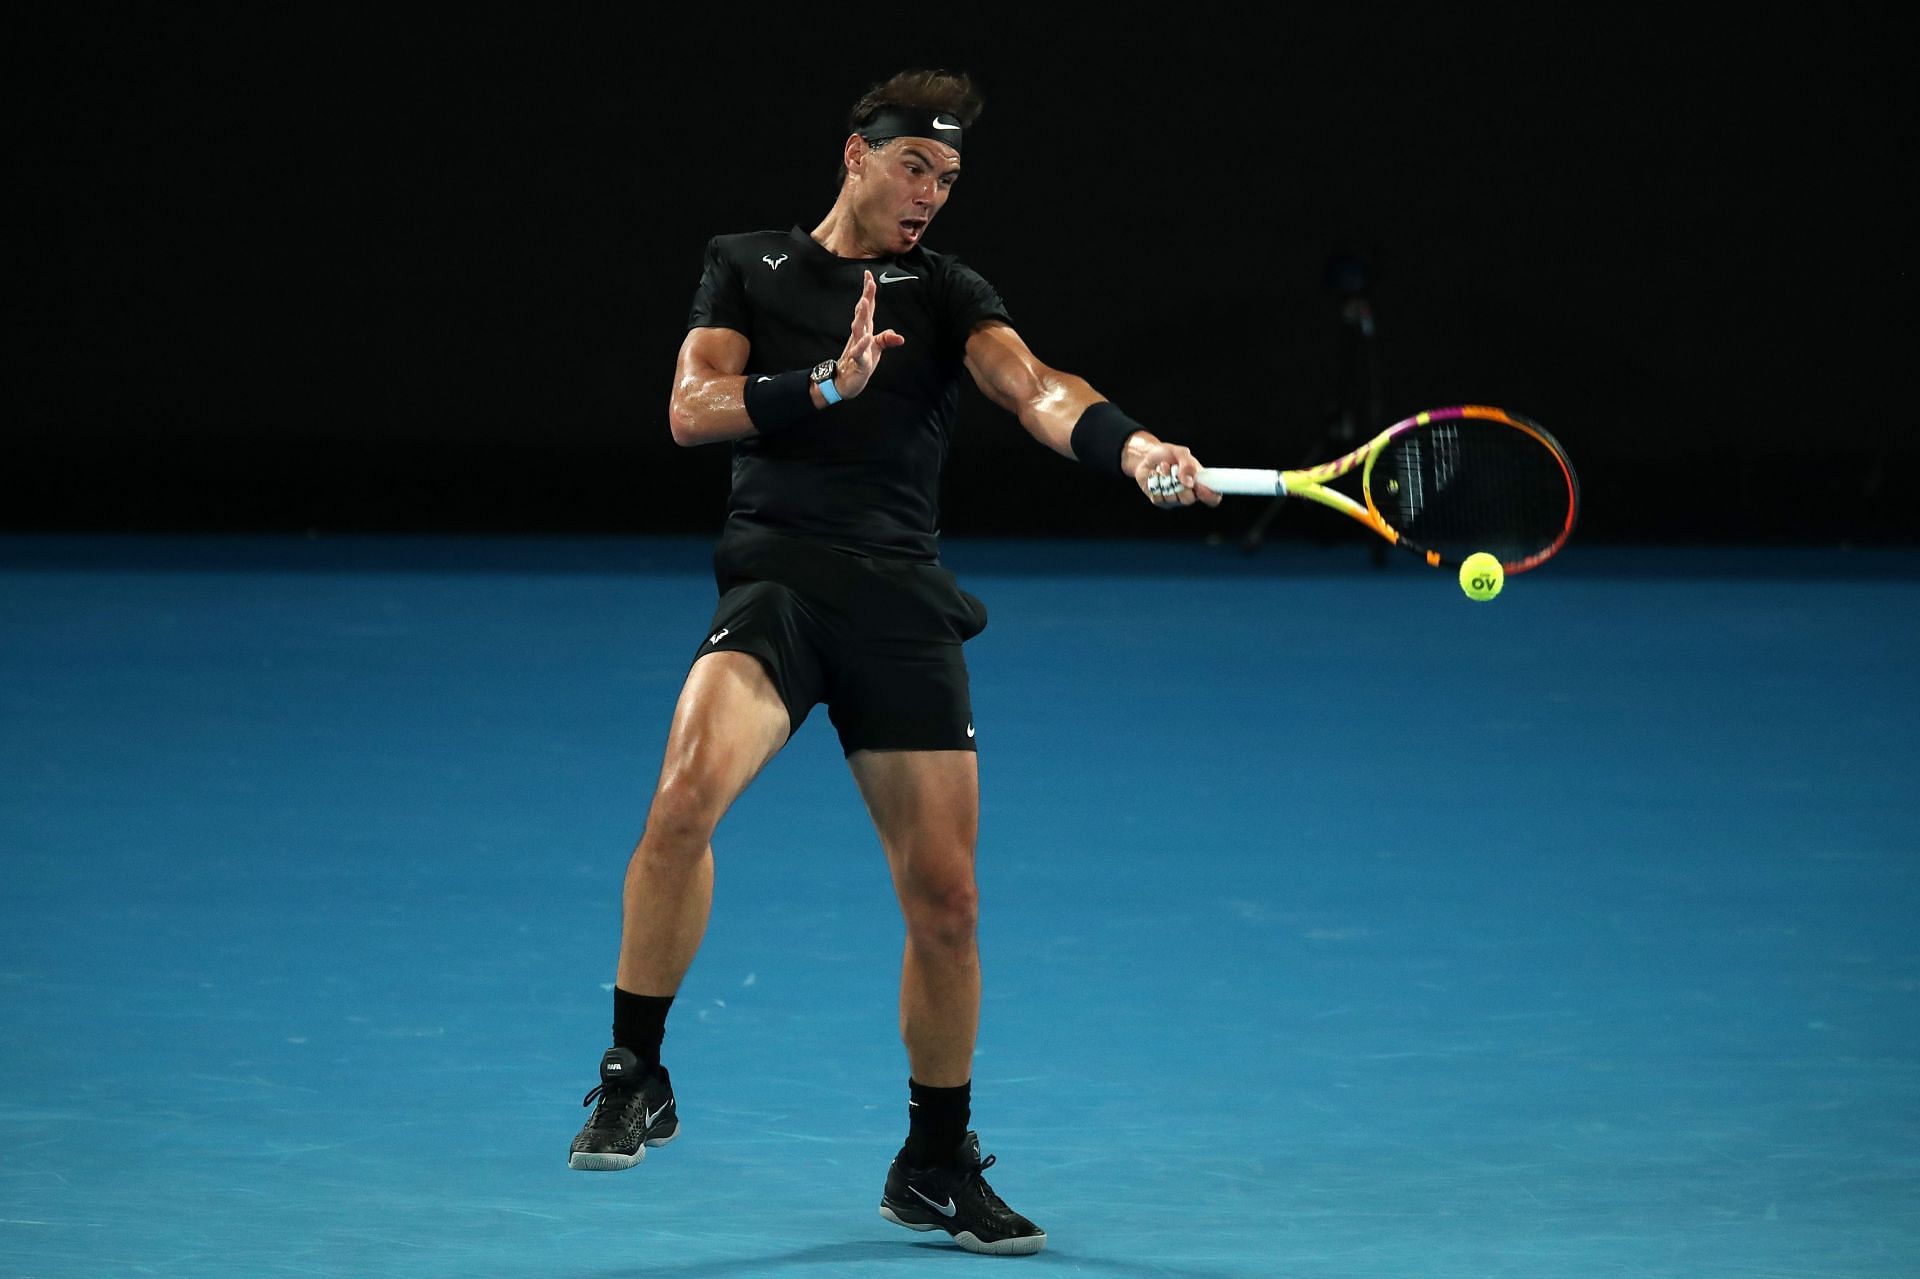 Rafael Nadal at the Melbourne Summer Set 1 2022